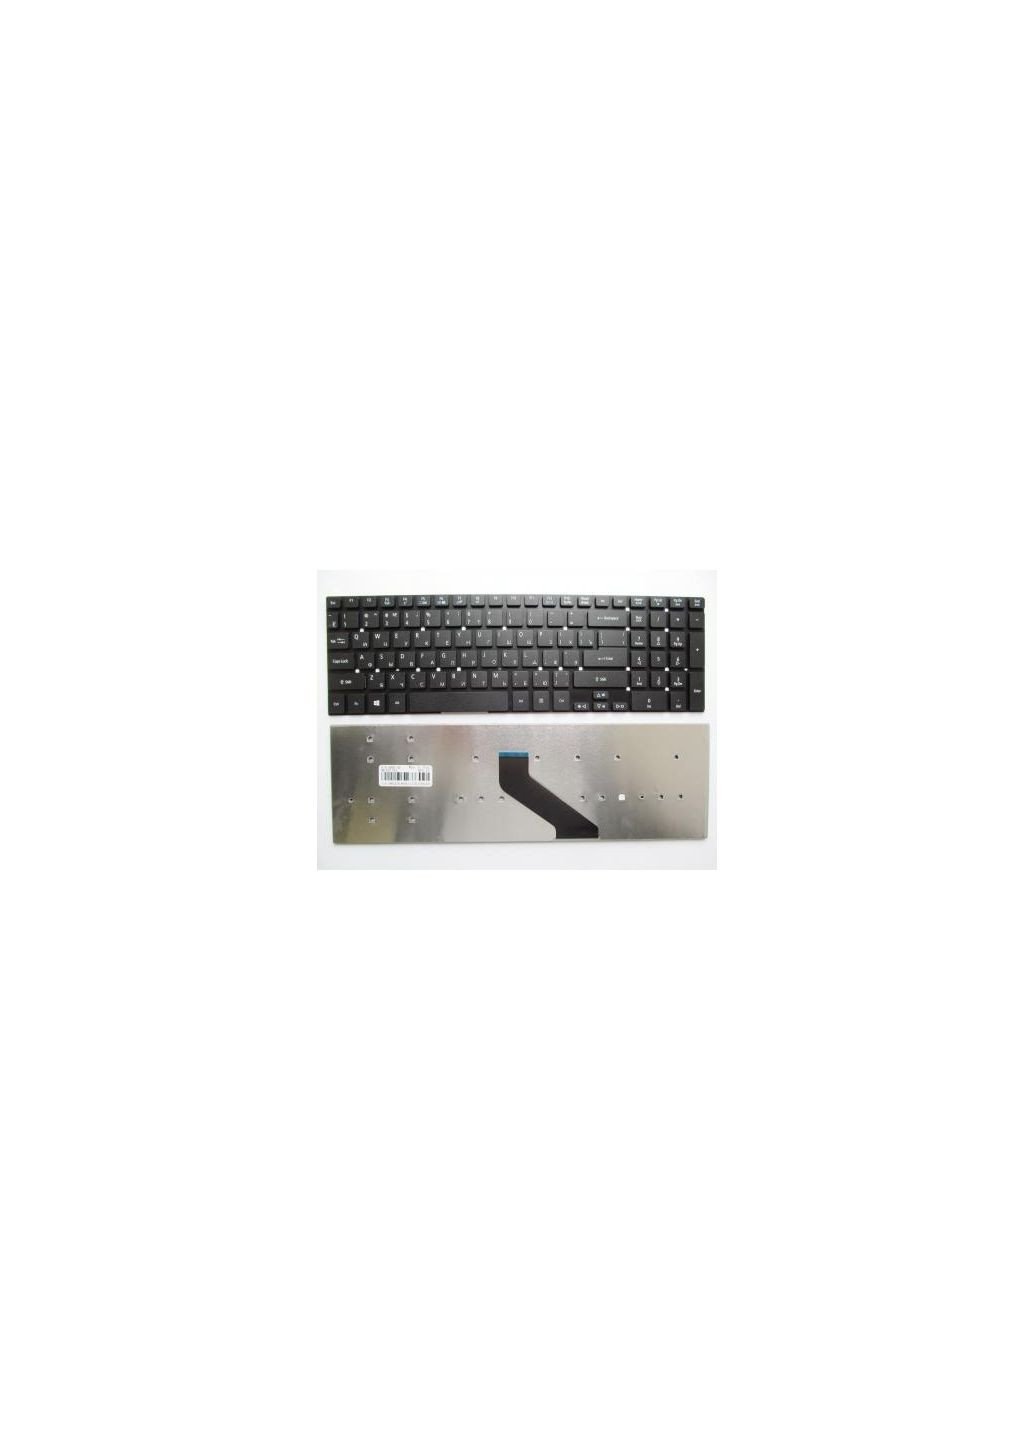 Клавиатура ноутбука Aspire 5755G/E1522/E1-731 Series черная без рамки RU (A43357) Acer aspire 5755g/e1-522/e1-731 series черная без рамки (276706592)